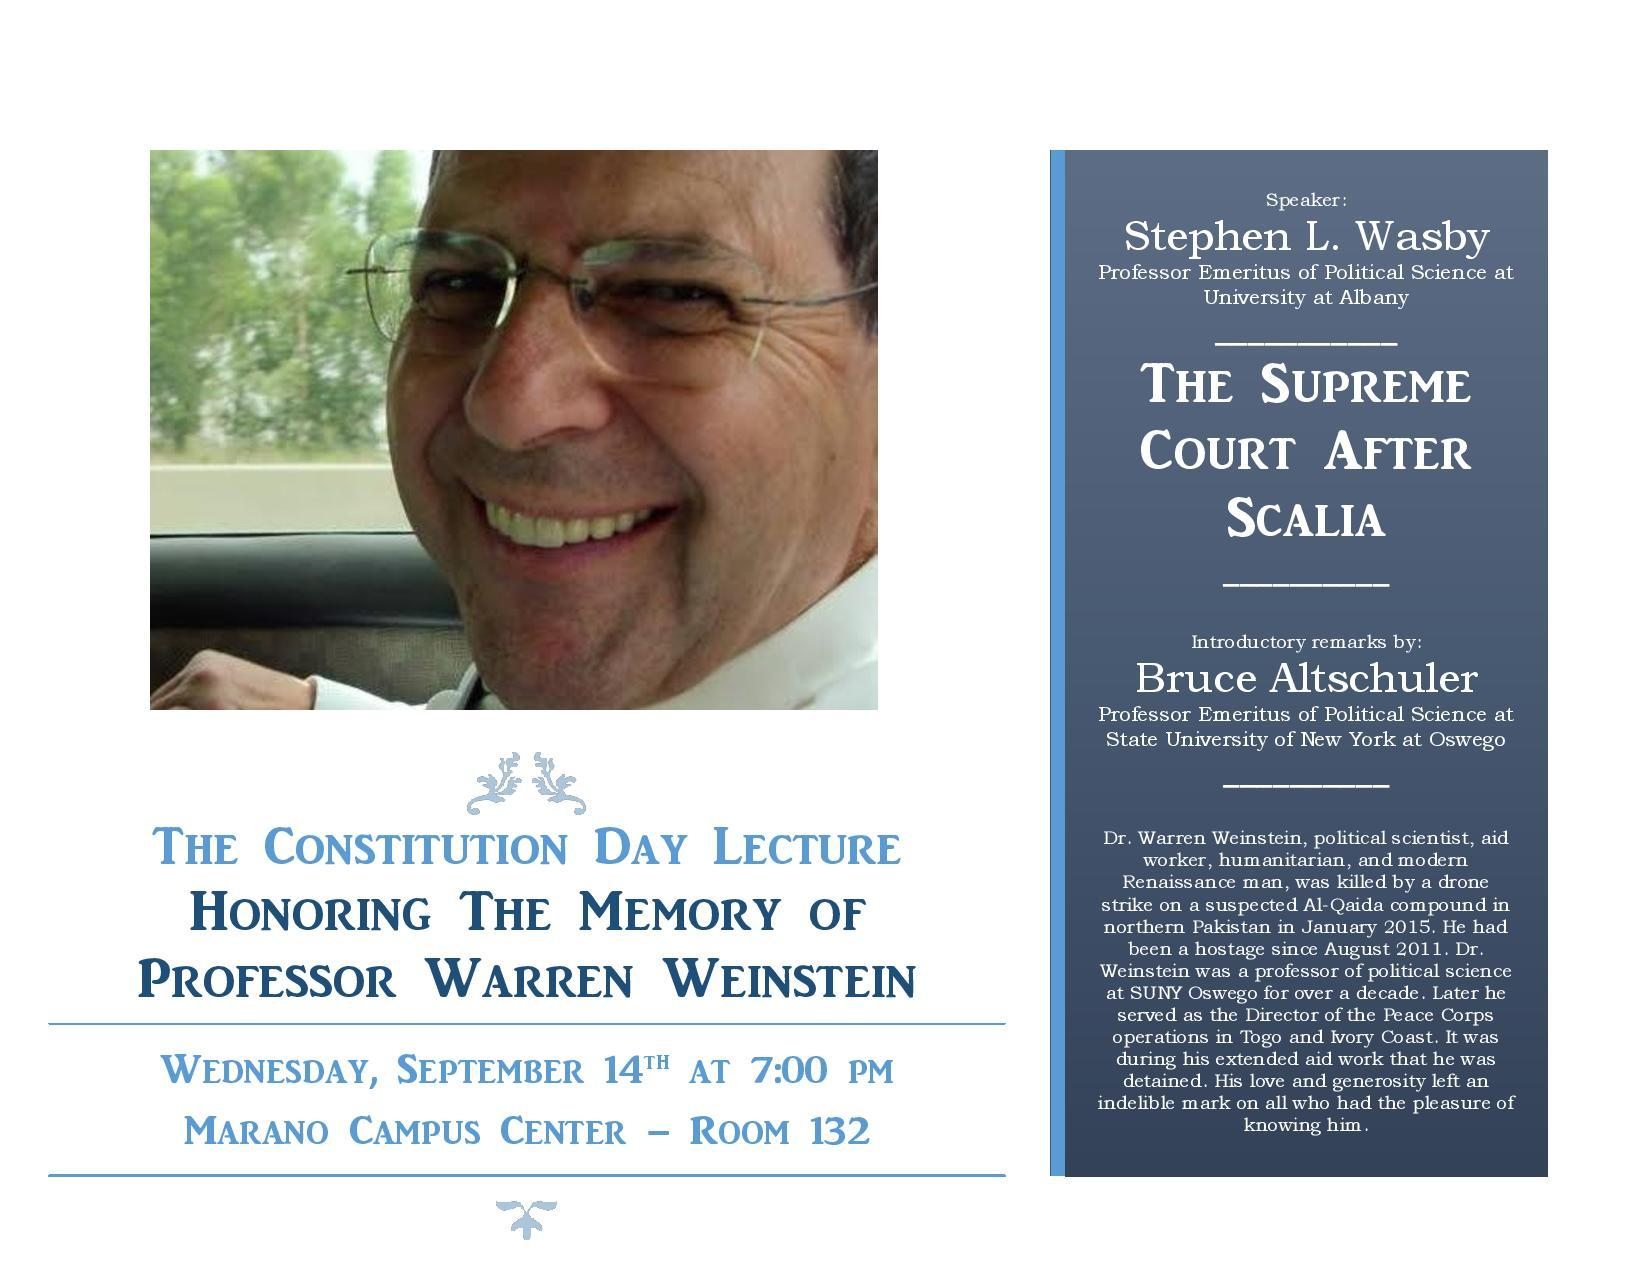 Constitution day flyer in memory of Professor Warren Weinstein